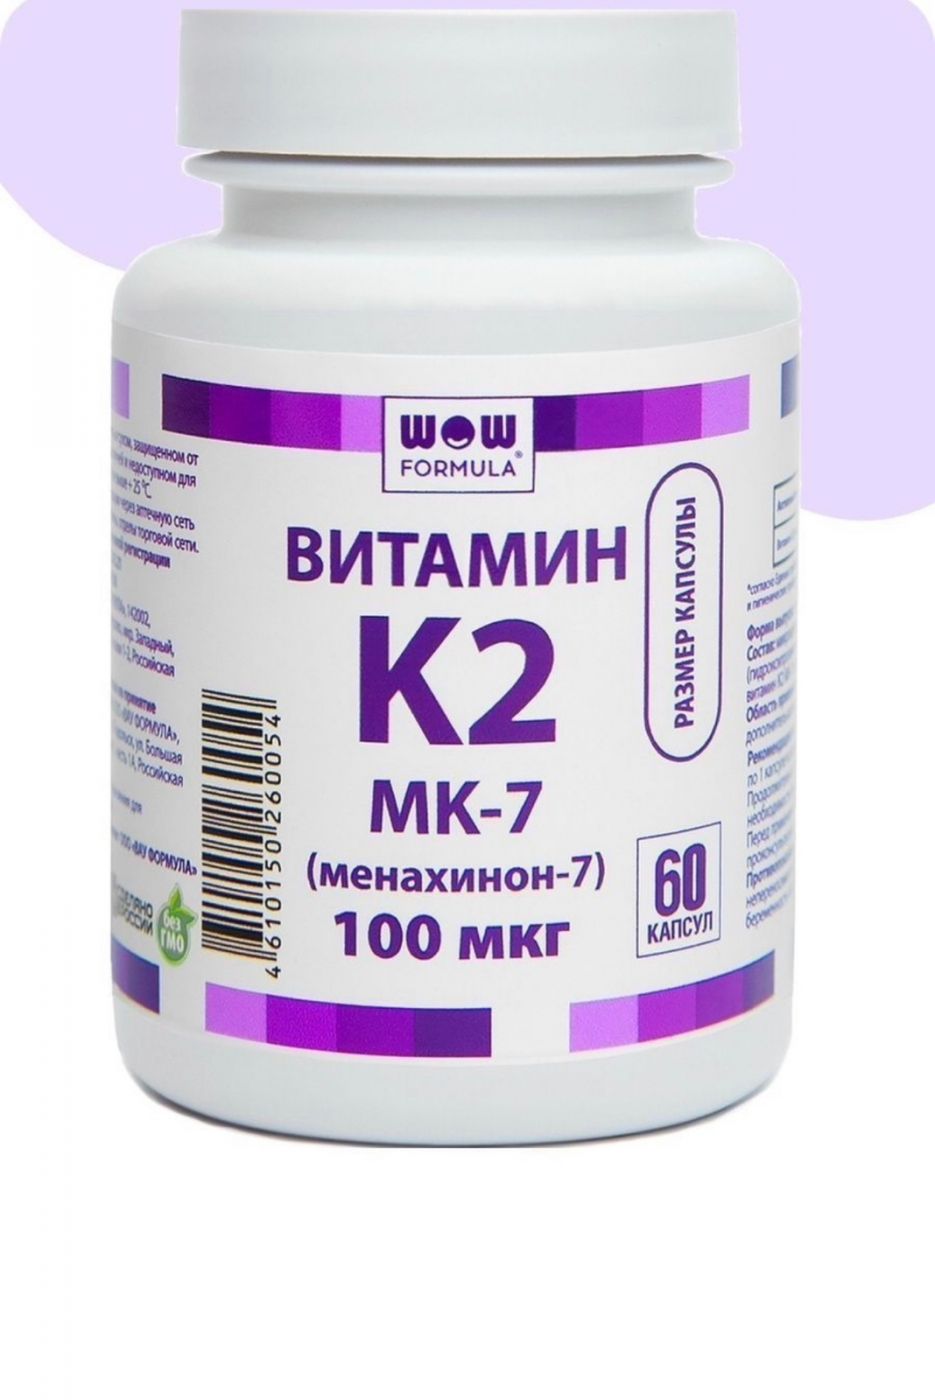 Витамин К2 (МК-7), 100 мкг, 60 капсул